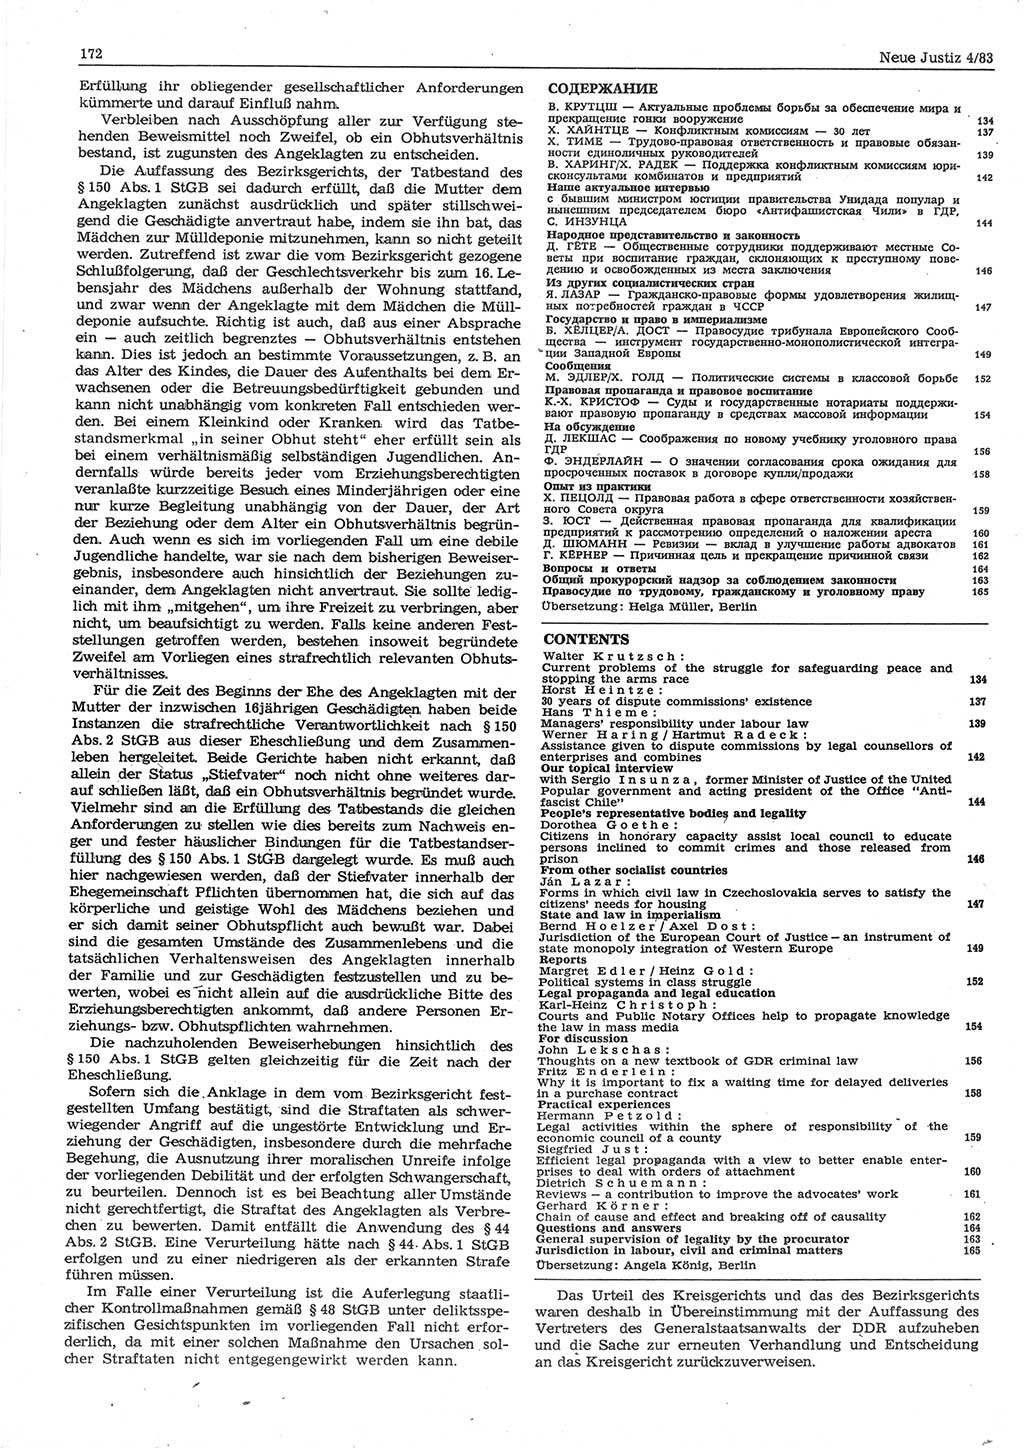 Neue Justiz (NJ), Zeitschrift für sozialistisches Recht und Gesetzlichkeit [Deutsche Demokratische Republik (DDR)], 37. Jahrgang 1983, Seite 172 (NJ DDR 1983, S. 172)